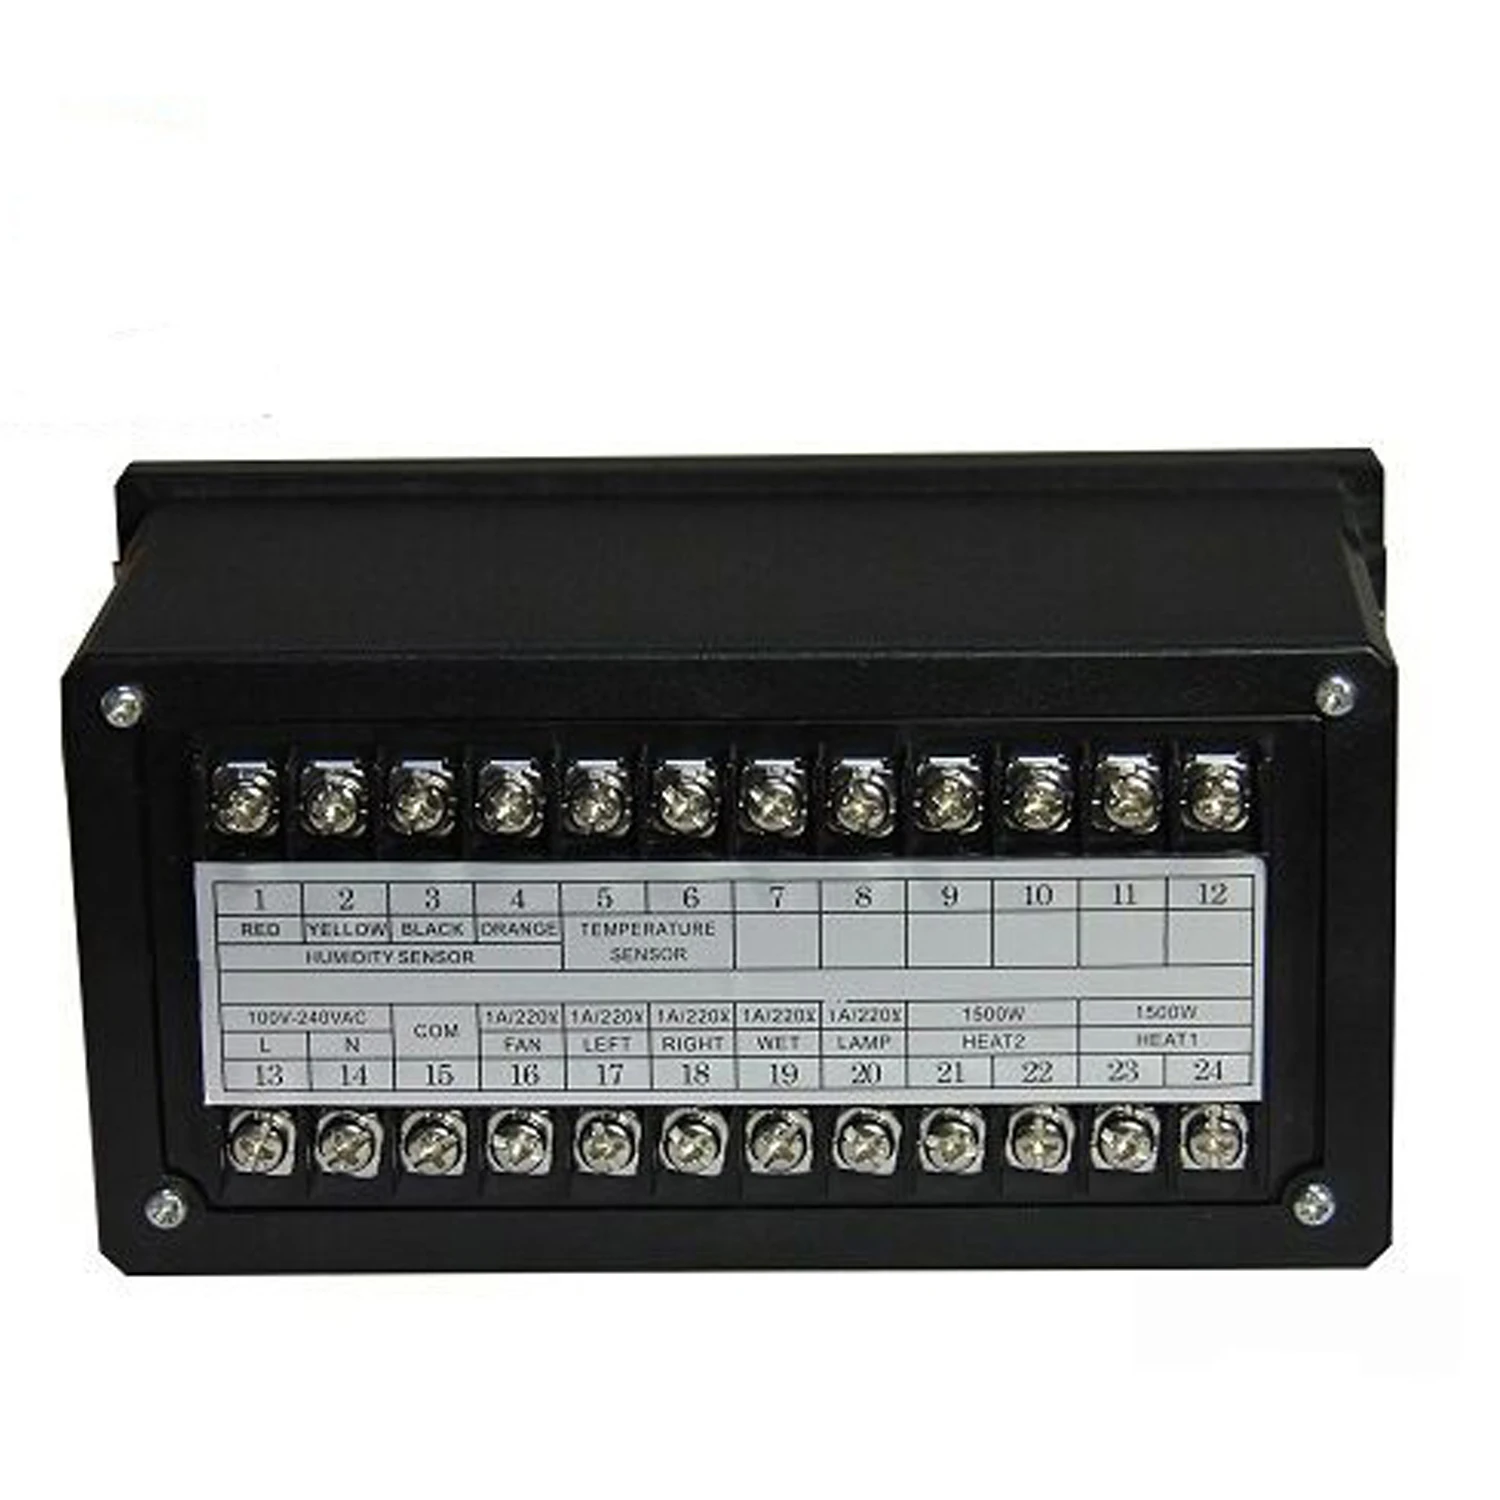 Термостат ZL-7918A многофункциональный автоматический контроллер температуры и